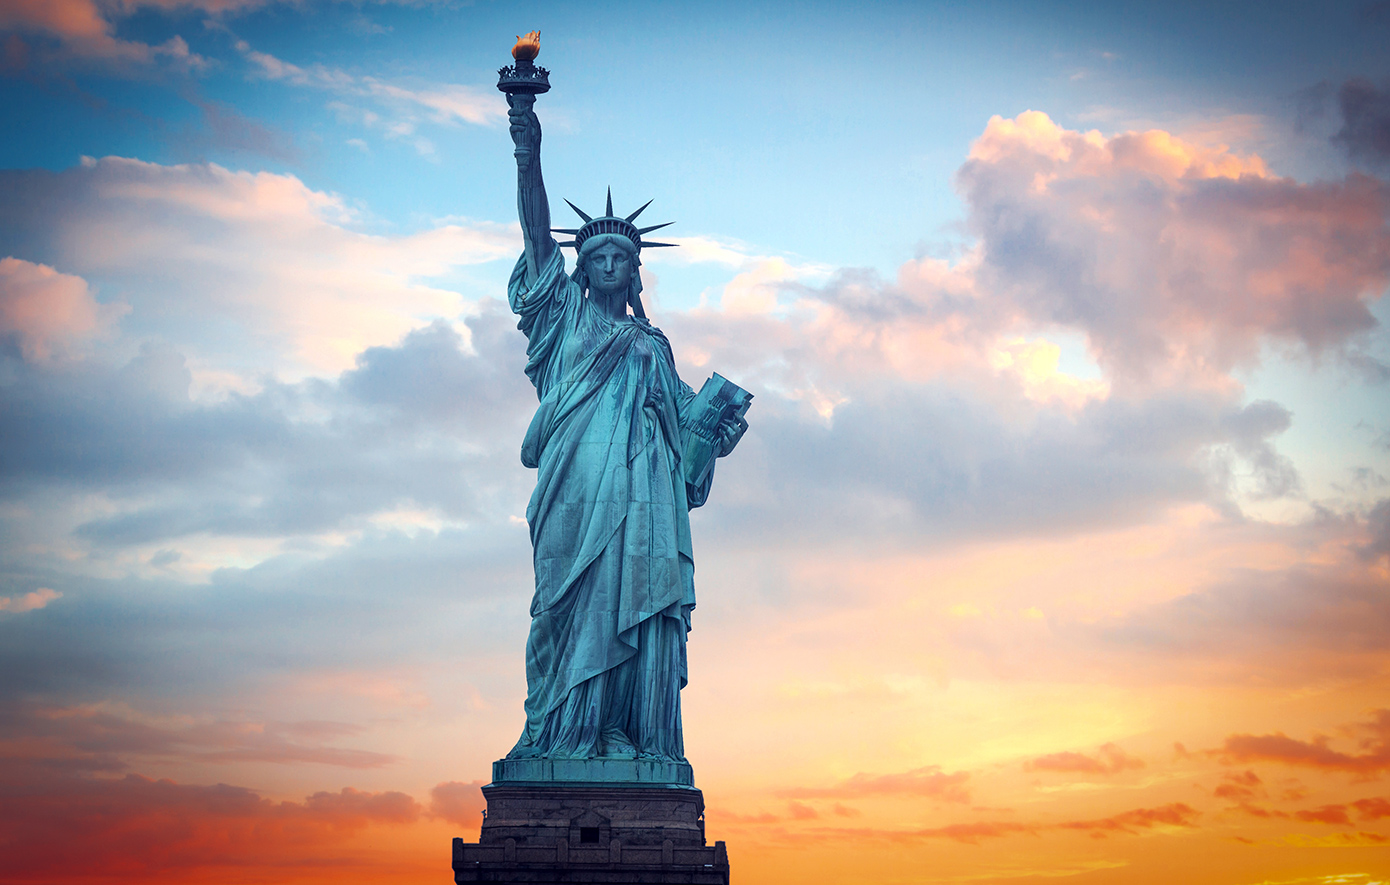 Σαν σήμερα 17 Ιουνίου: Το Άγαλμα της Ελευερίας φτάνει στη Νέα Υόρκη &#8211; Ένα δώρο φιλίας από τους Γάλλους προς το λαό της Αμερικής